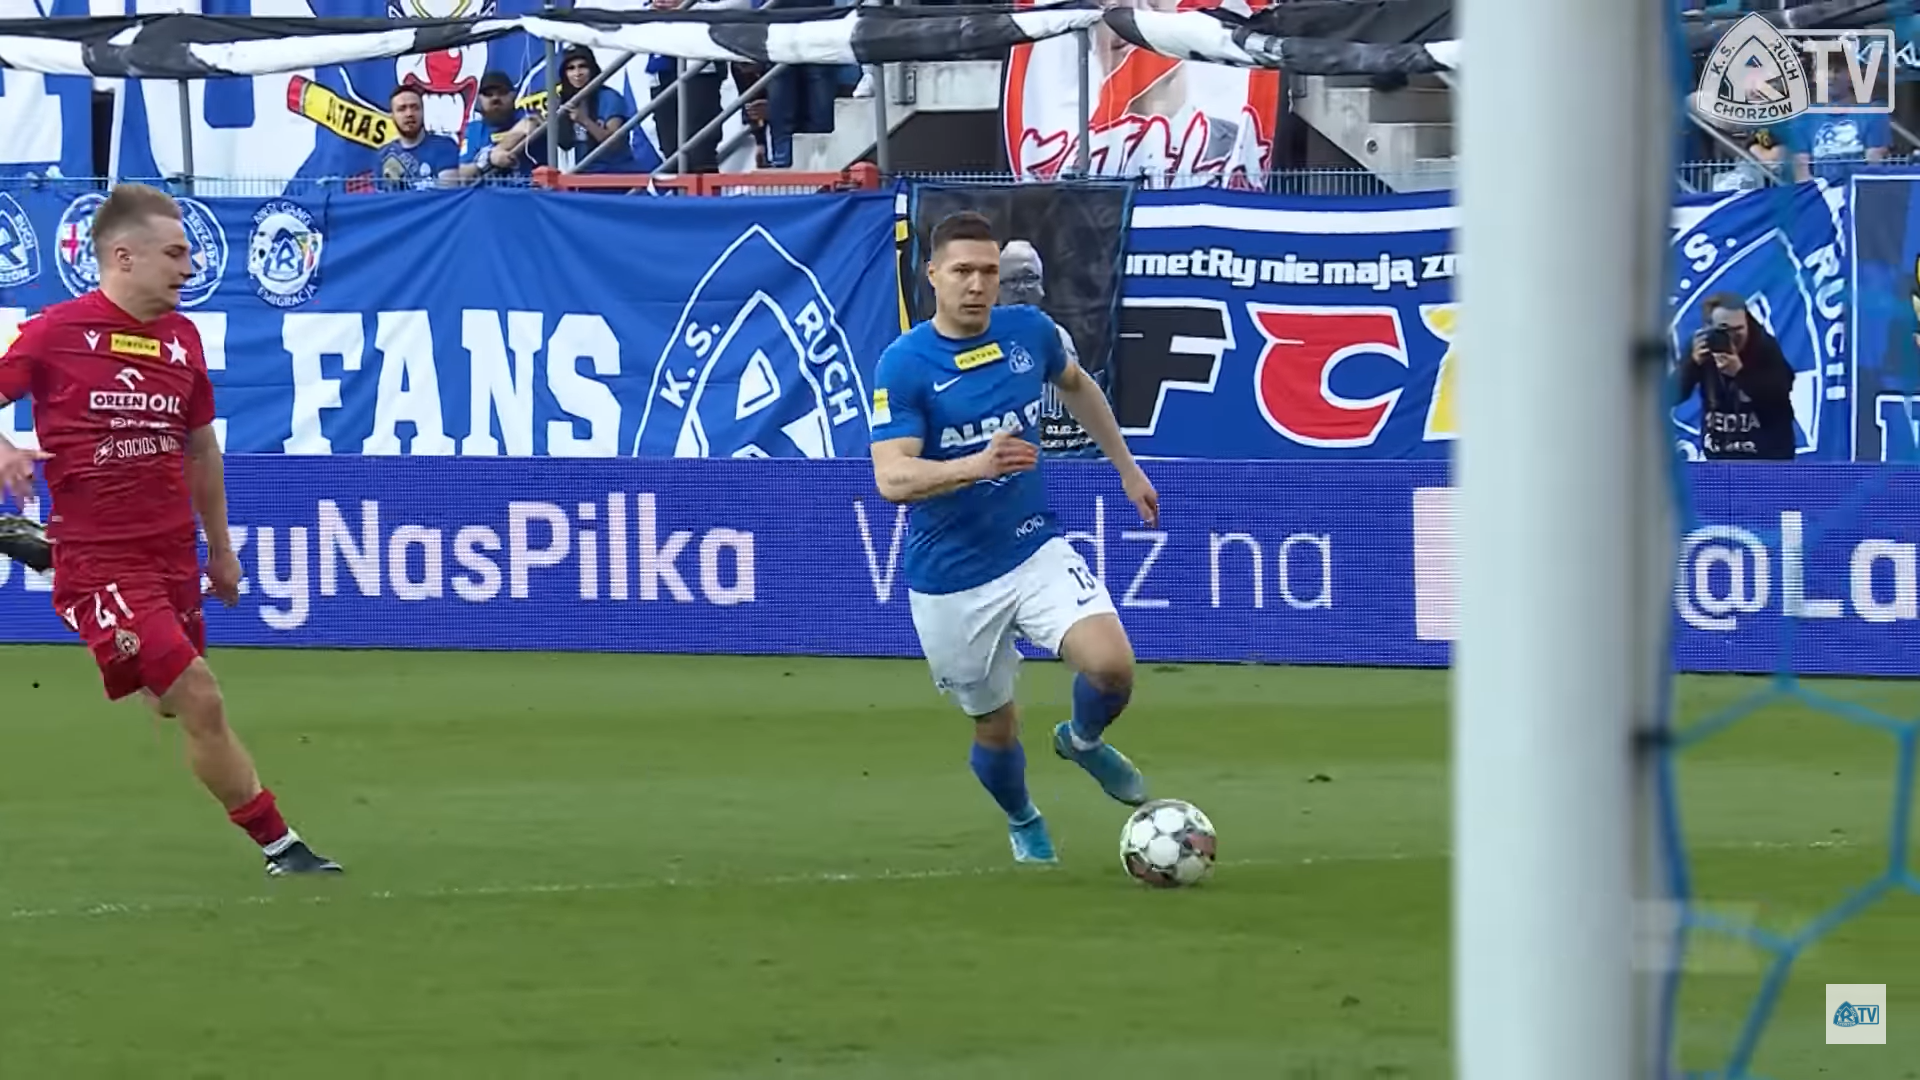 Tak Łukasz Moneta strzelił gola Wiśle Kraków w meczu na szczycie 1 ligi/screen Polsat Sport